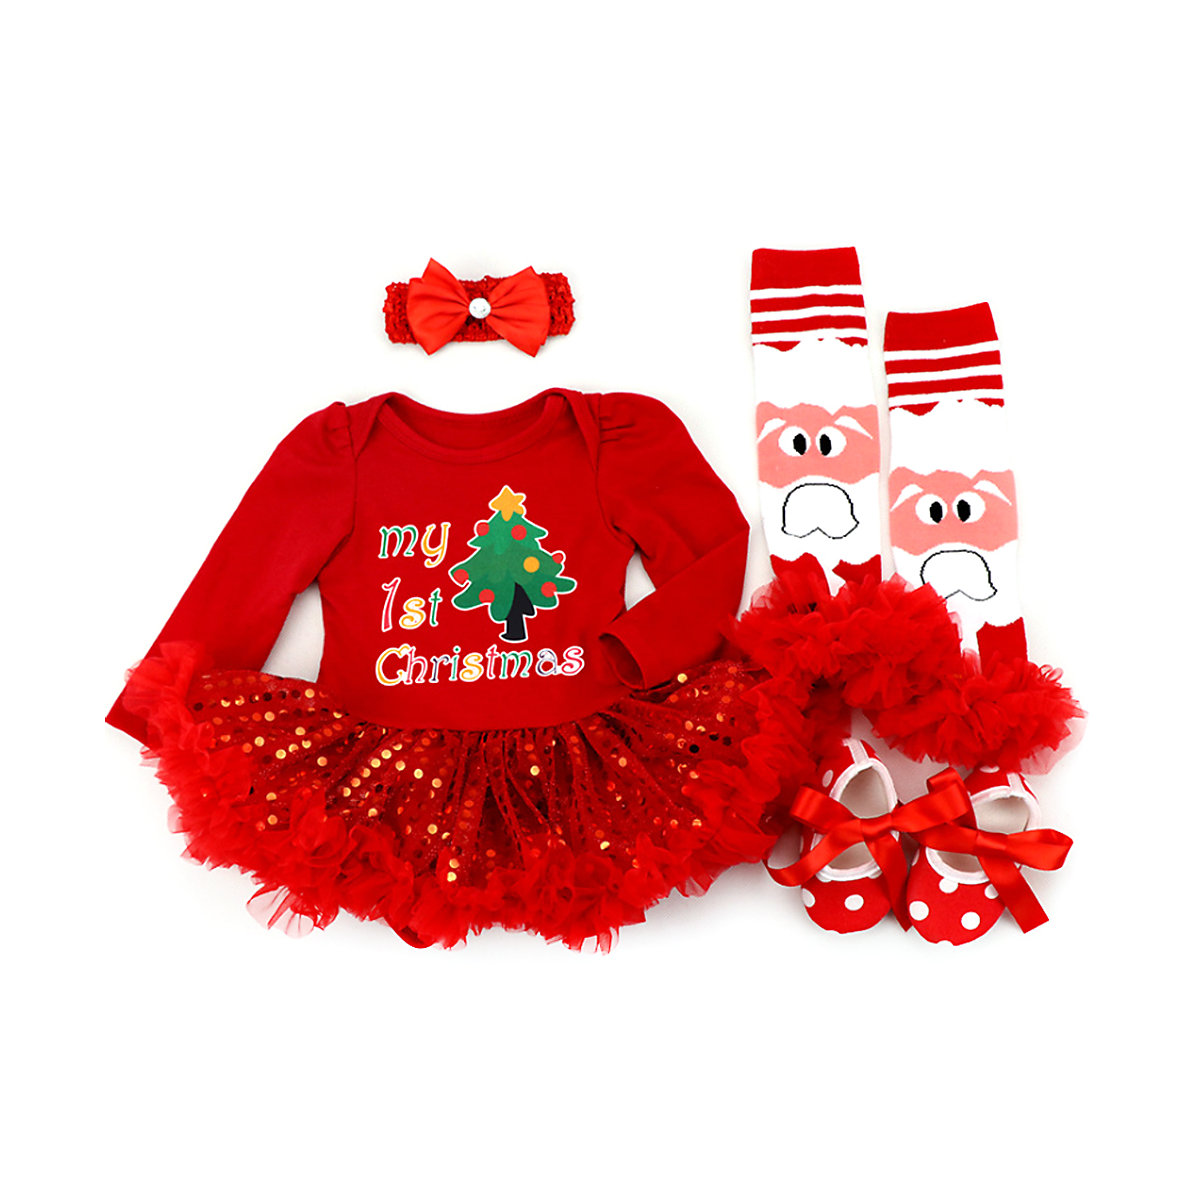 frler frler Weihnachten Outfit Set für Baby Mädchen Anzüge für Mädchen rot